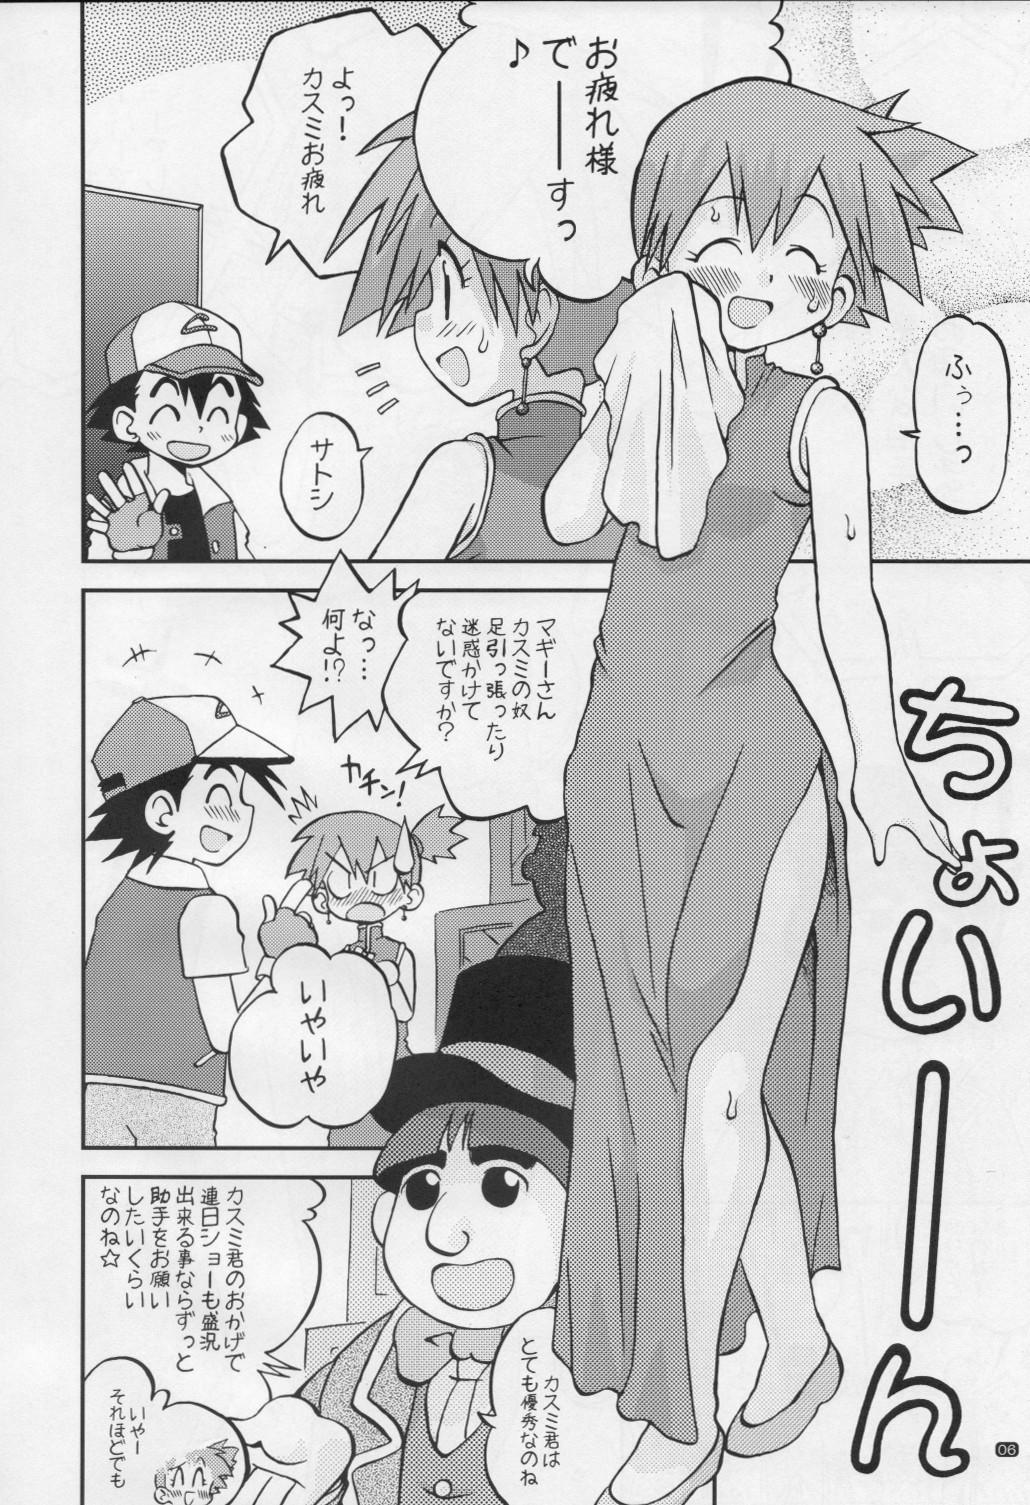 Adorable Yume no Tsubomi wa Tsubomi no Mama dakedo - Pokemon High Heels - Page 5